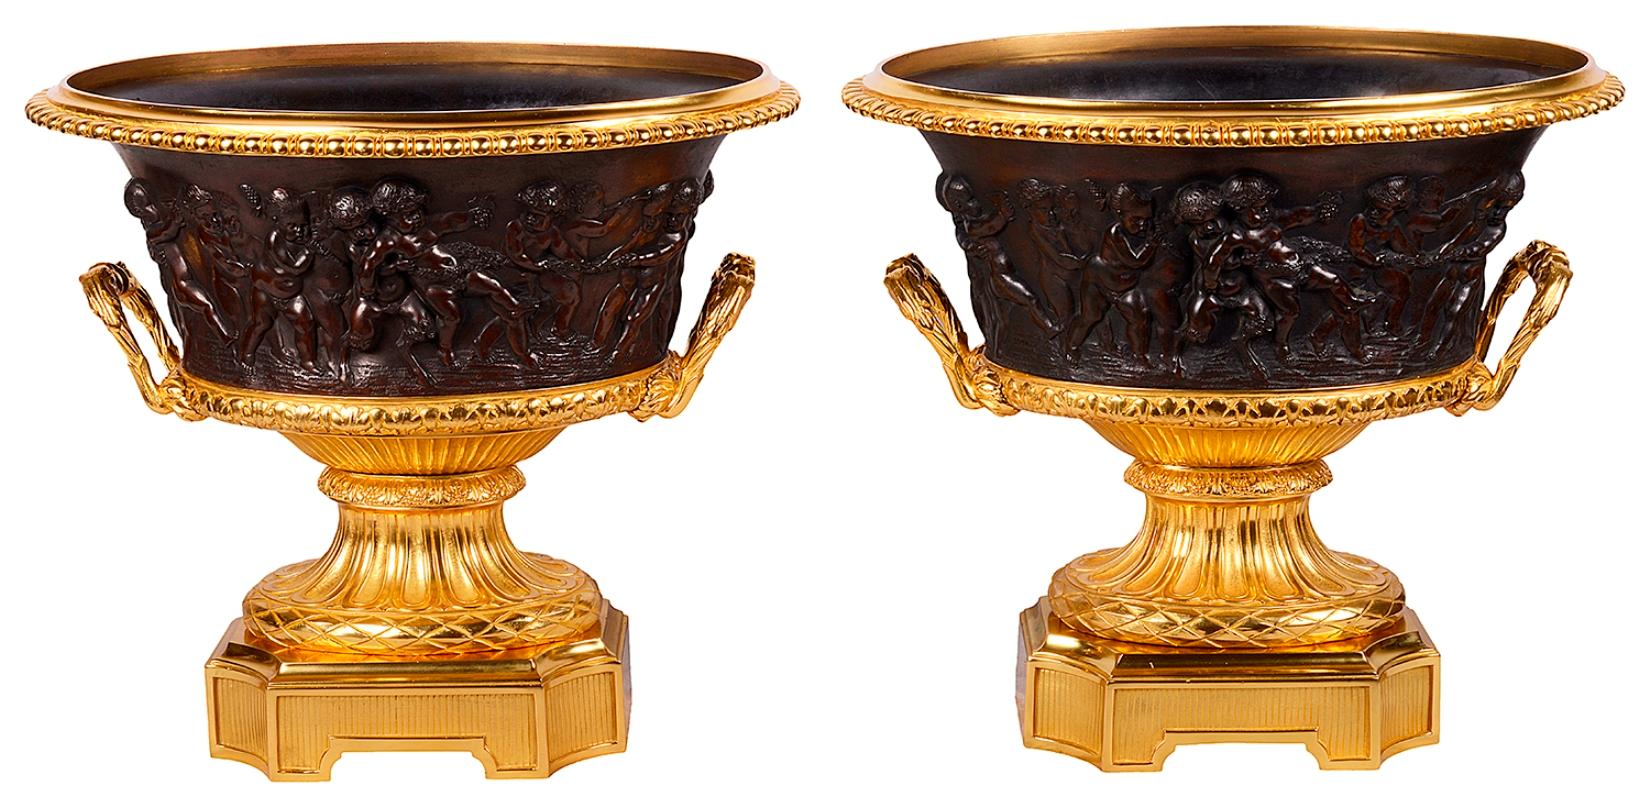 Paire très impressionnante d'urnes Campana en bronze doré et patiné du XIXe siècle. Chacune d'elles présente de merveilleuses scènes classiques de Bacchus Putti en bronze, reposant sur des piédestaux en bronze doré cannelé et ciselé, avec des